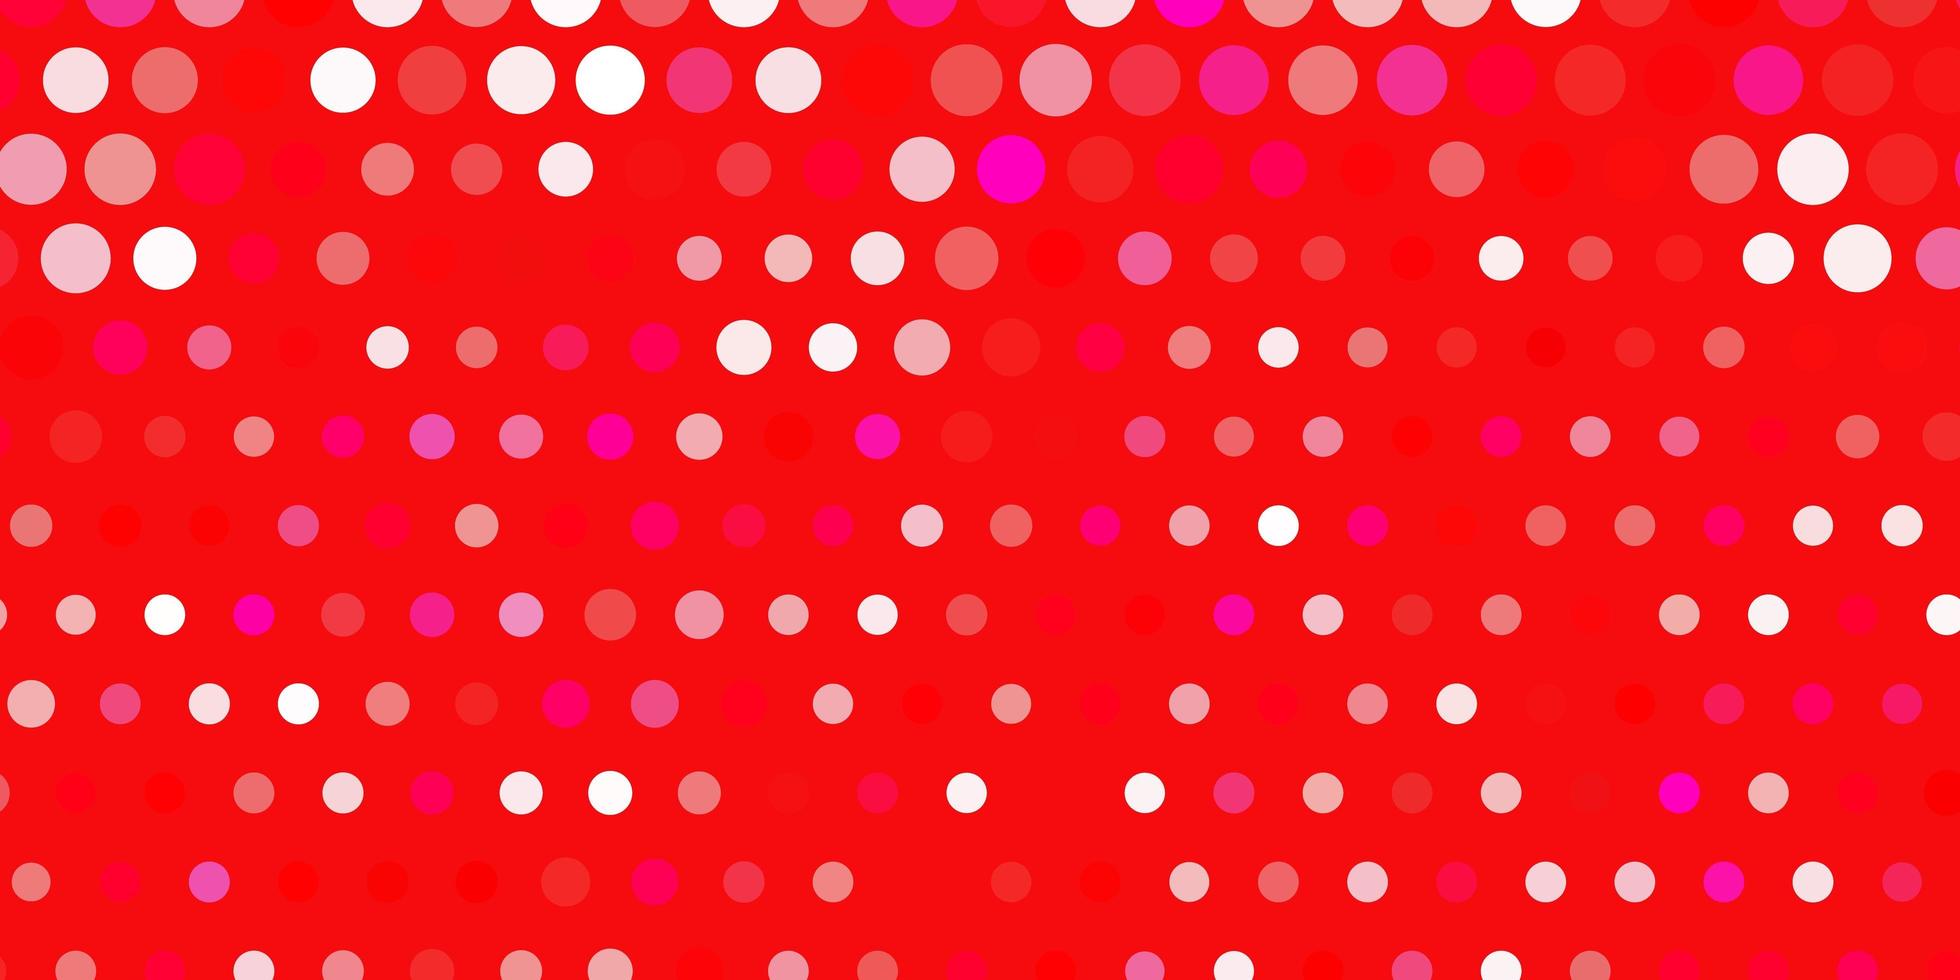 layout de vetor rosa claro, vermelho com formas de círculo.